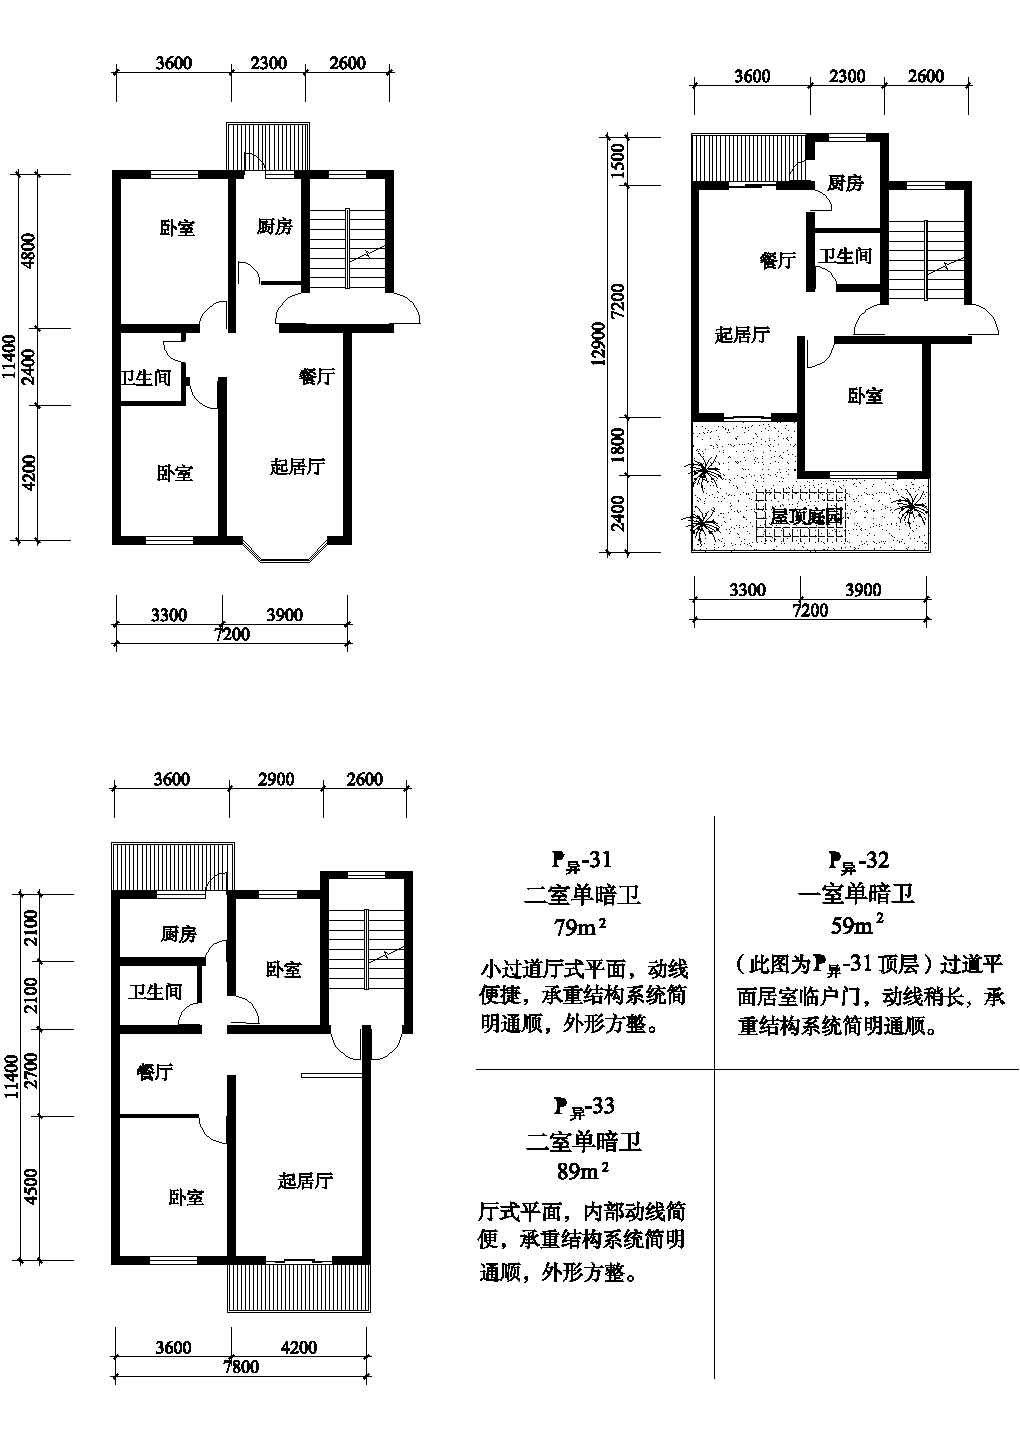 二室79/59/89平方单元式住宅平面图纸